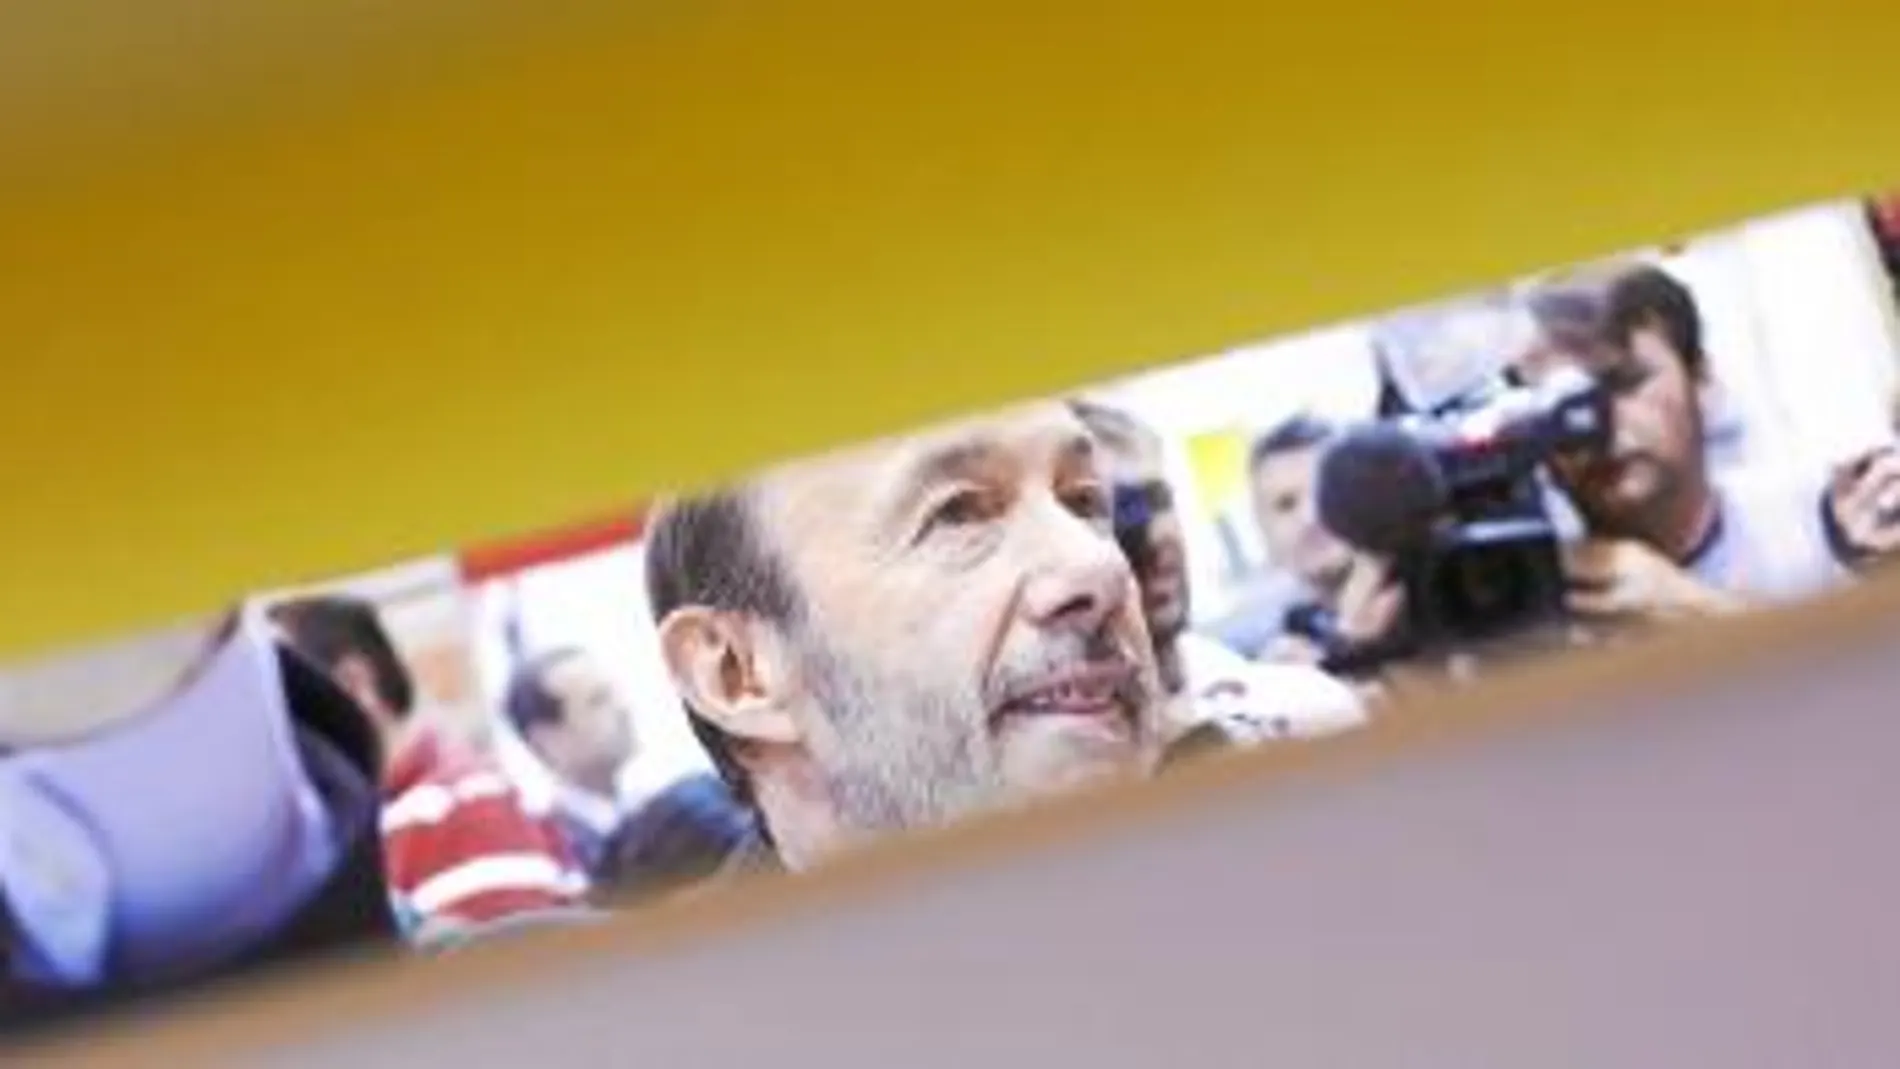 El candidato socialista durante su visita a la feria Internacional del Libro de Madrid